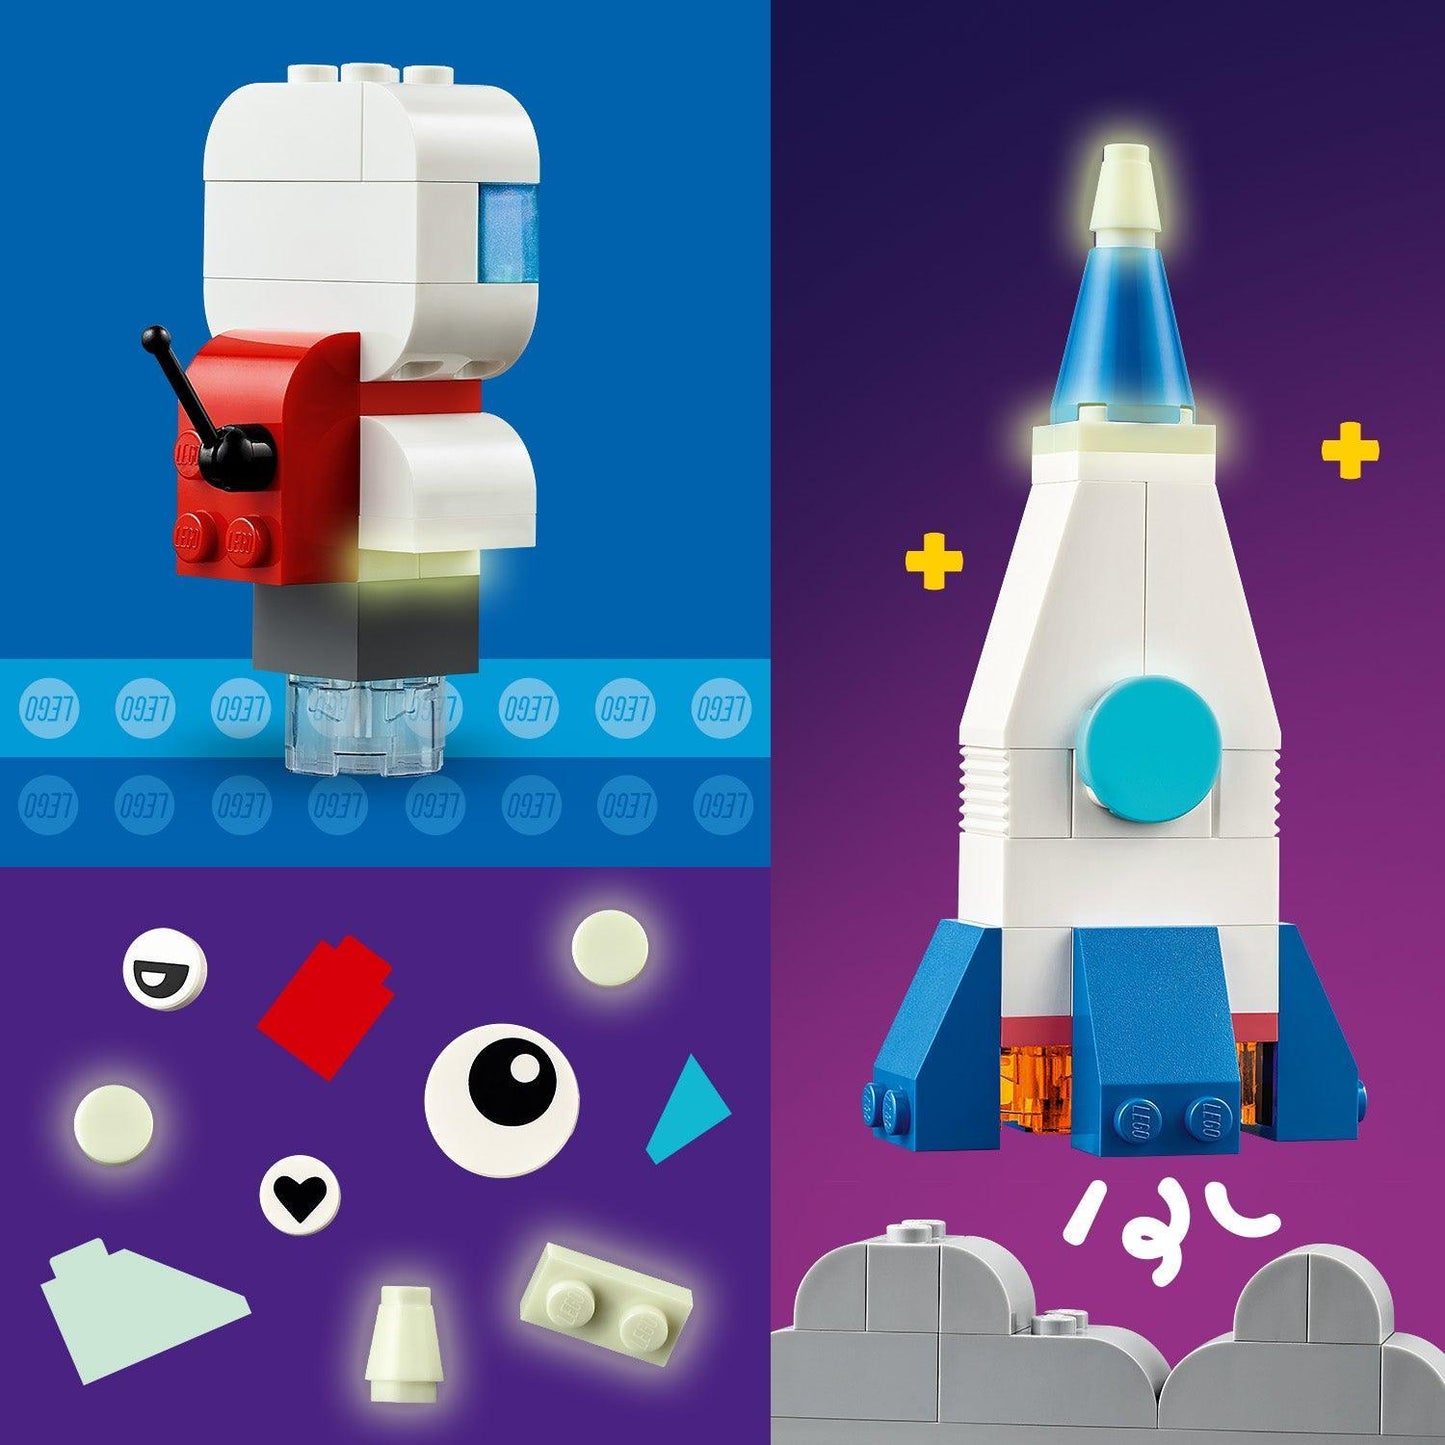 LEGO Creatieve ruimte planeten 11037 Classic | 2TTOYS ✓ Official shop<br>